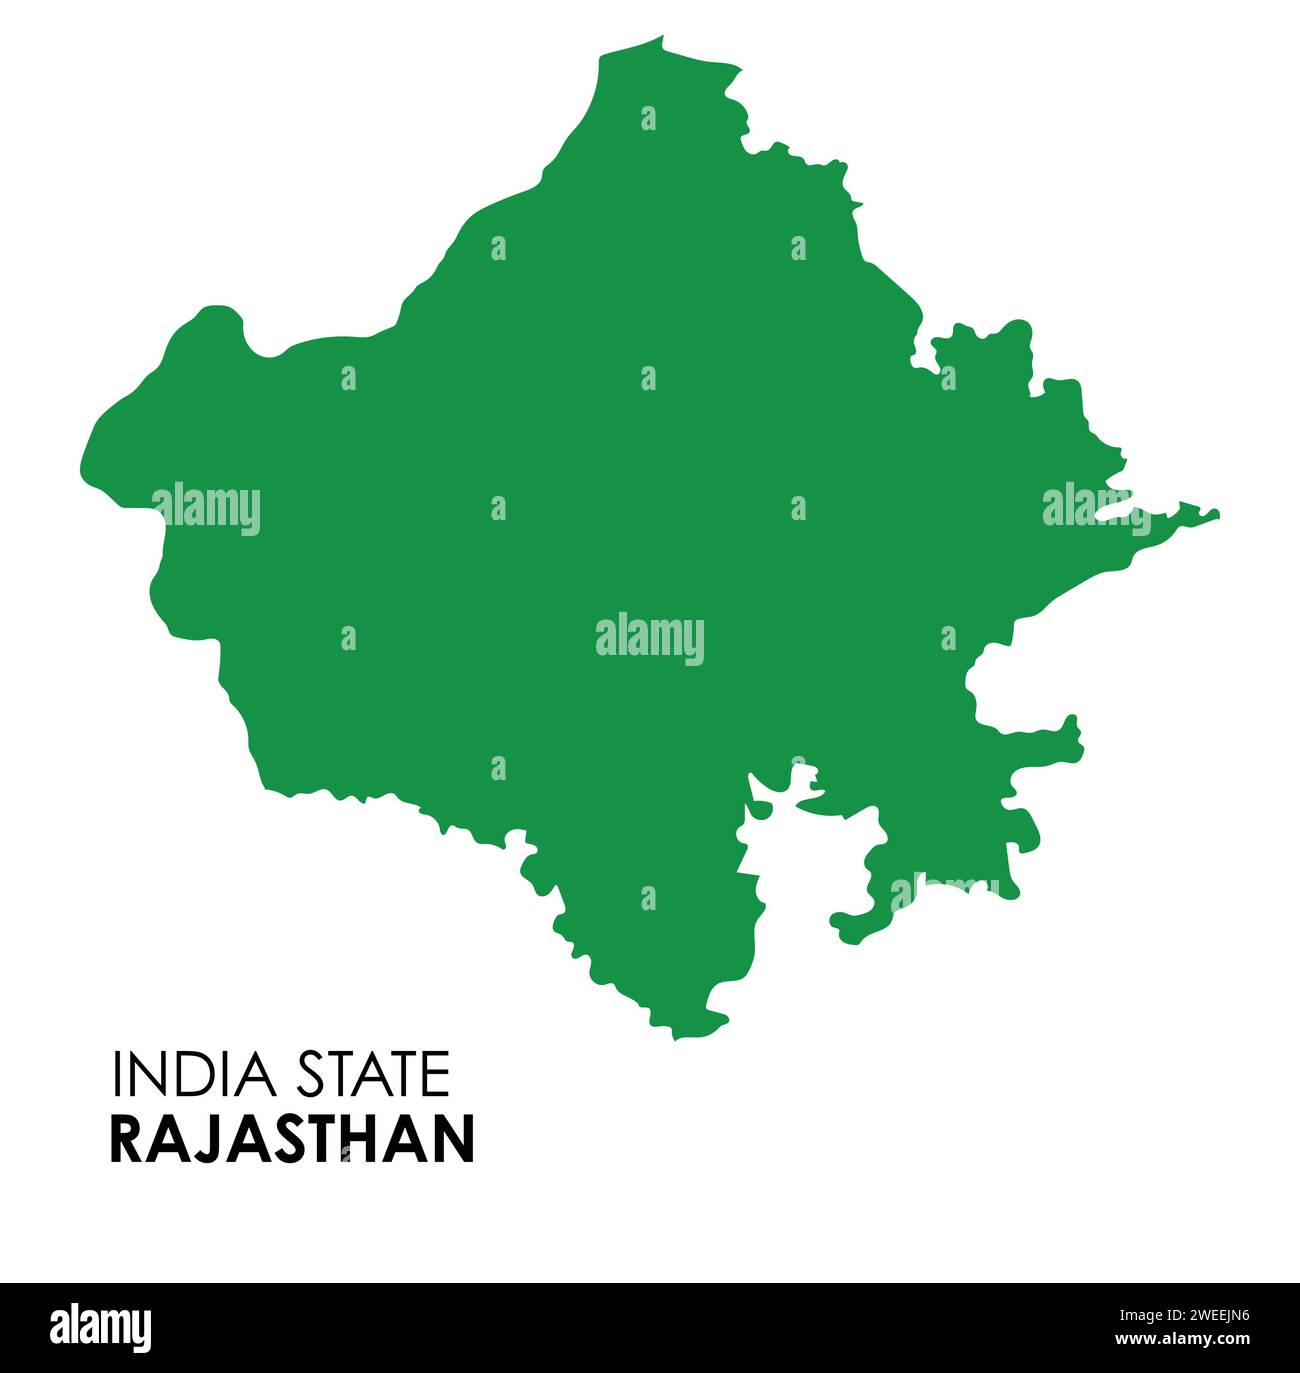 Mappa Rajasthan dello stato indiano. Illustrazione vettoriale mappa Rajasthan. Mappa del Rajasthan su sfondo bianco. Illustrazione Vettoriale